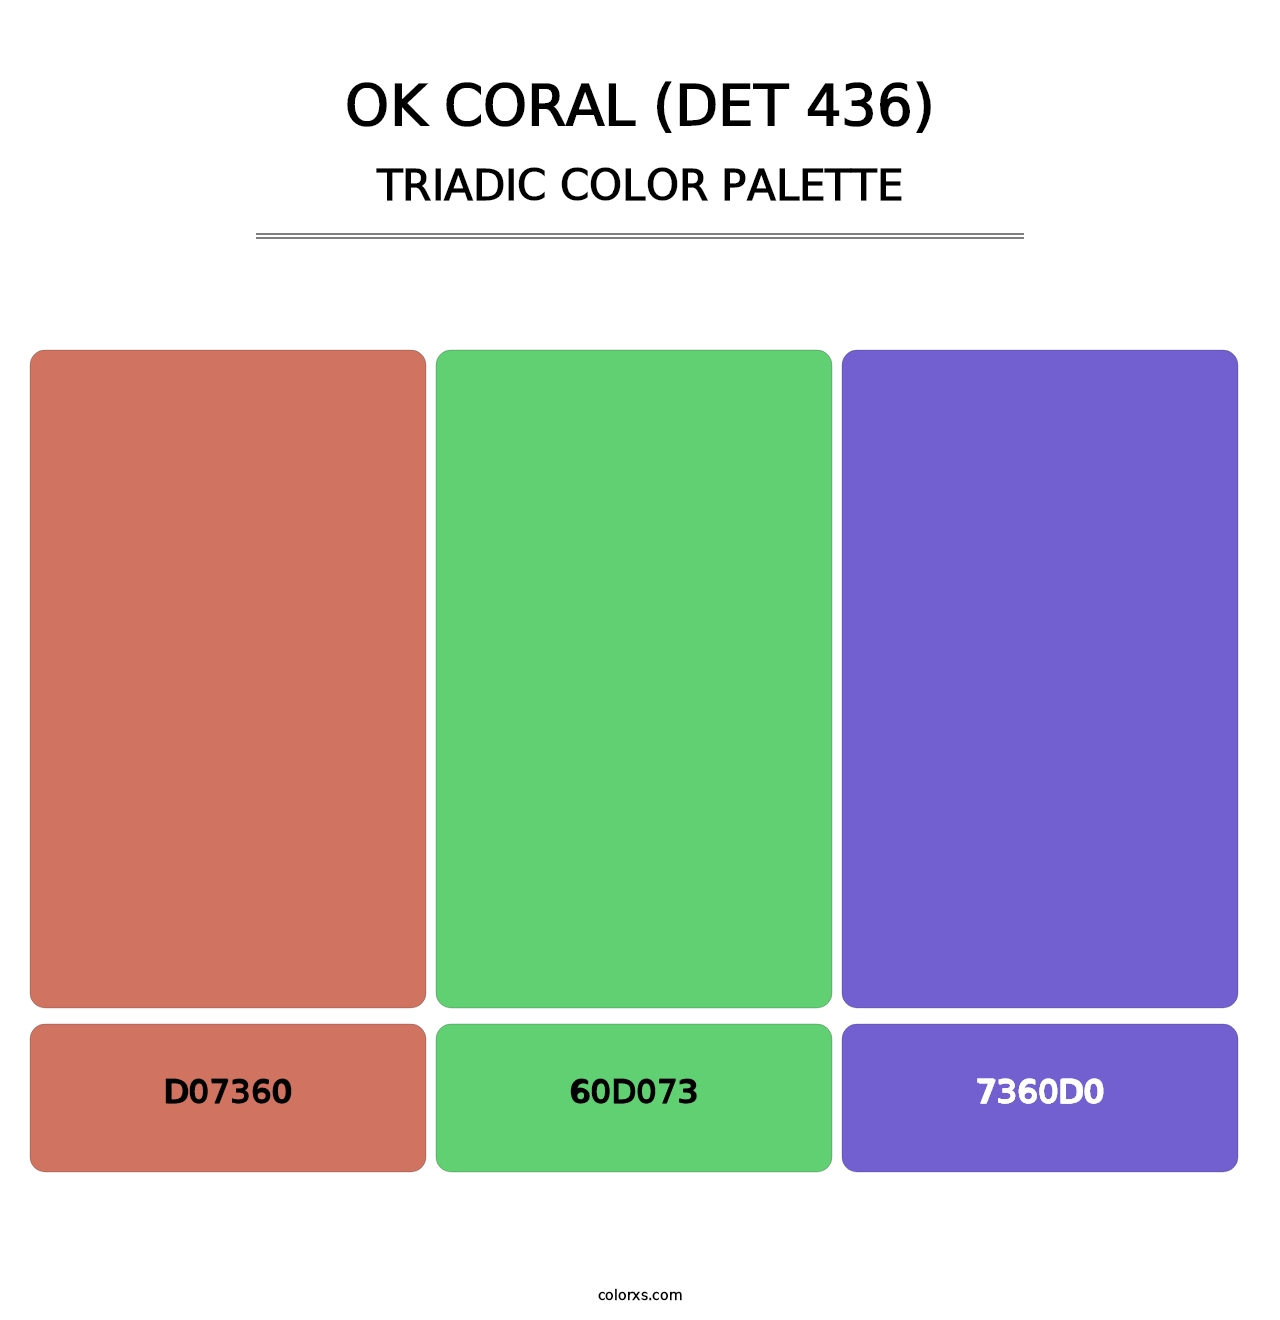 OK Coral (DET 436) - Triadic Color Palette